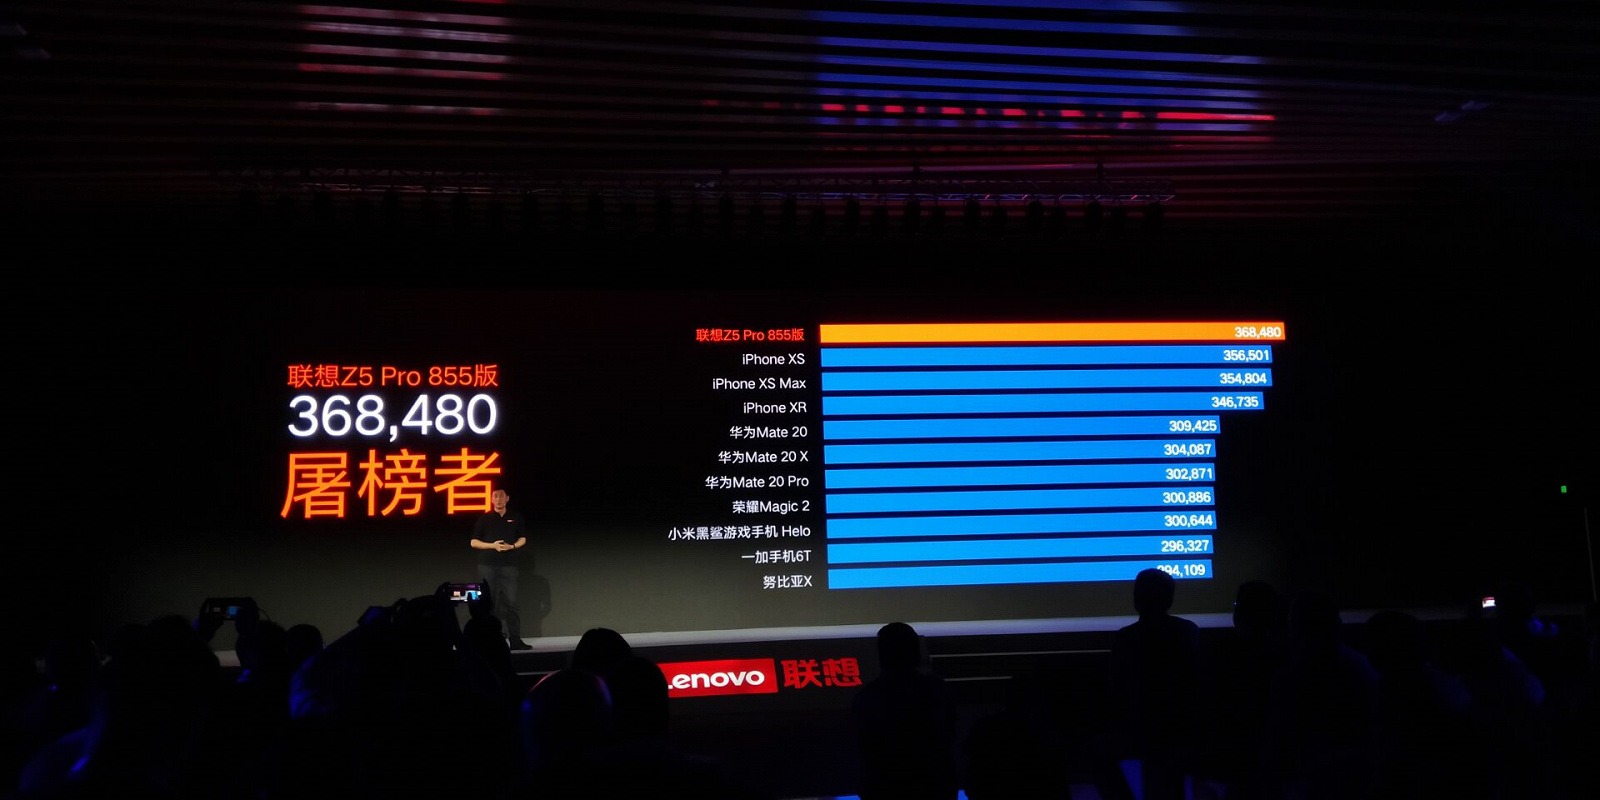 Lenovo Z5 Pro Snapdragon 855 Edition - первый в мире смартфон с 12 ГБ оперативной памяти и абсолютный рекордсмен рейтинга AnTuTu